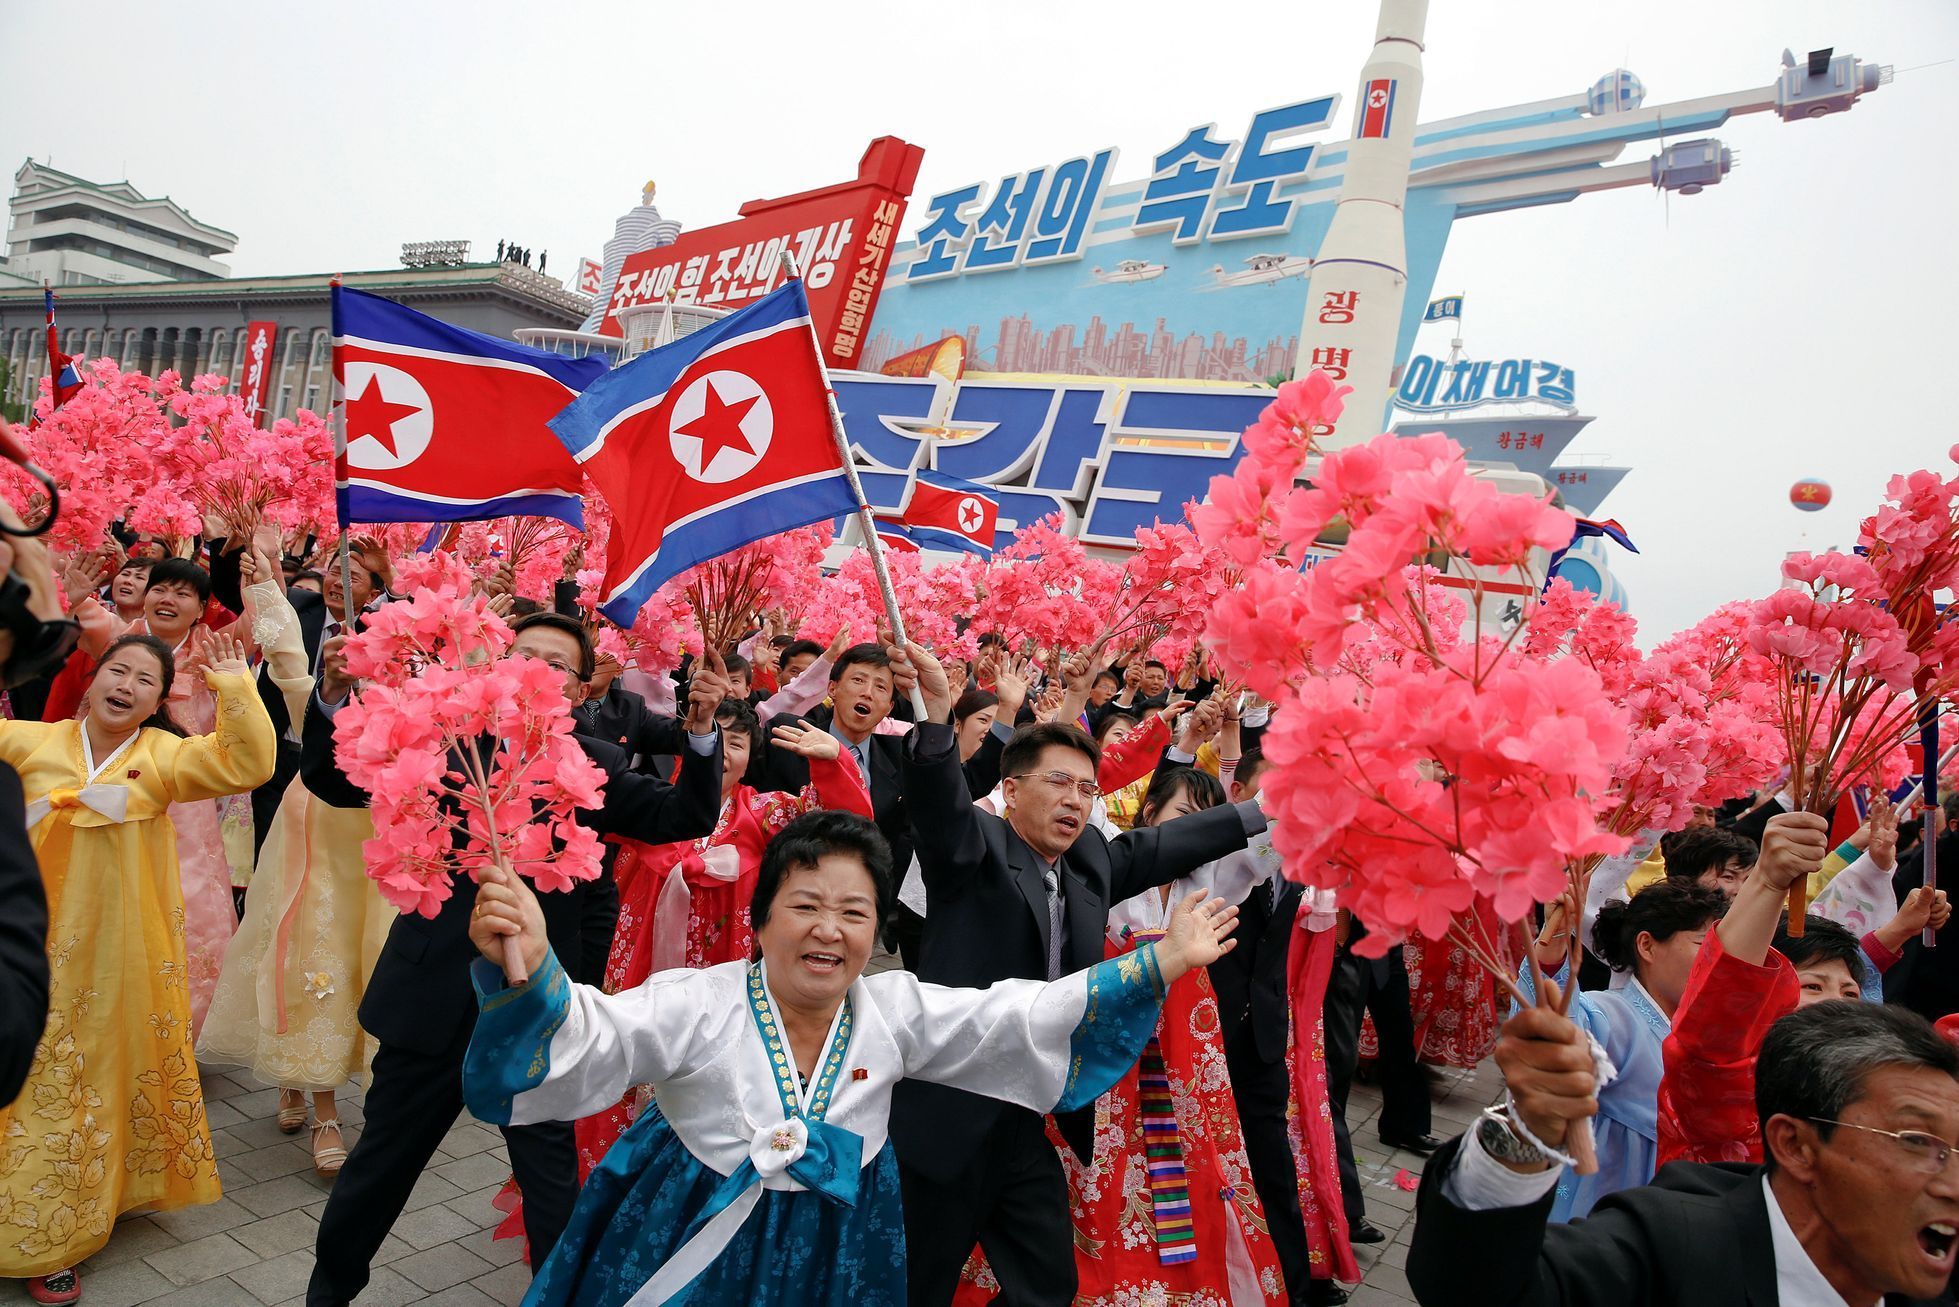 Severní Korea - sjezd strany a průvod